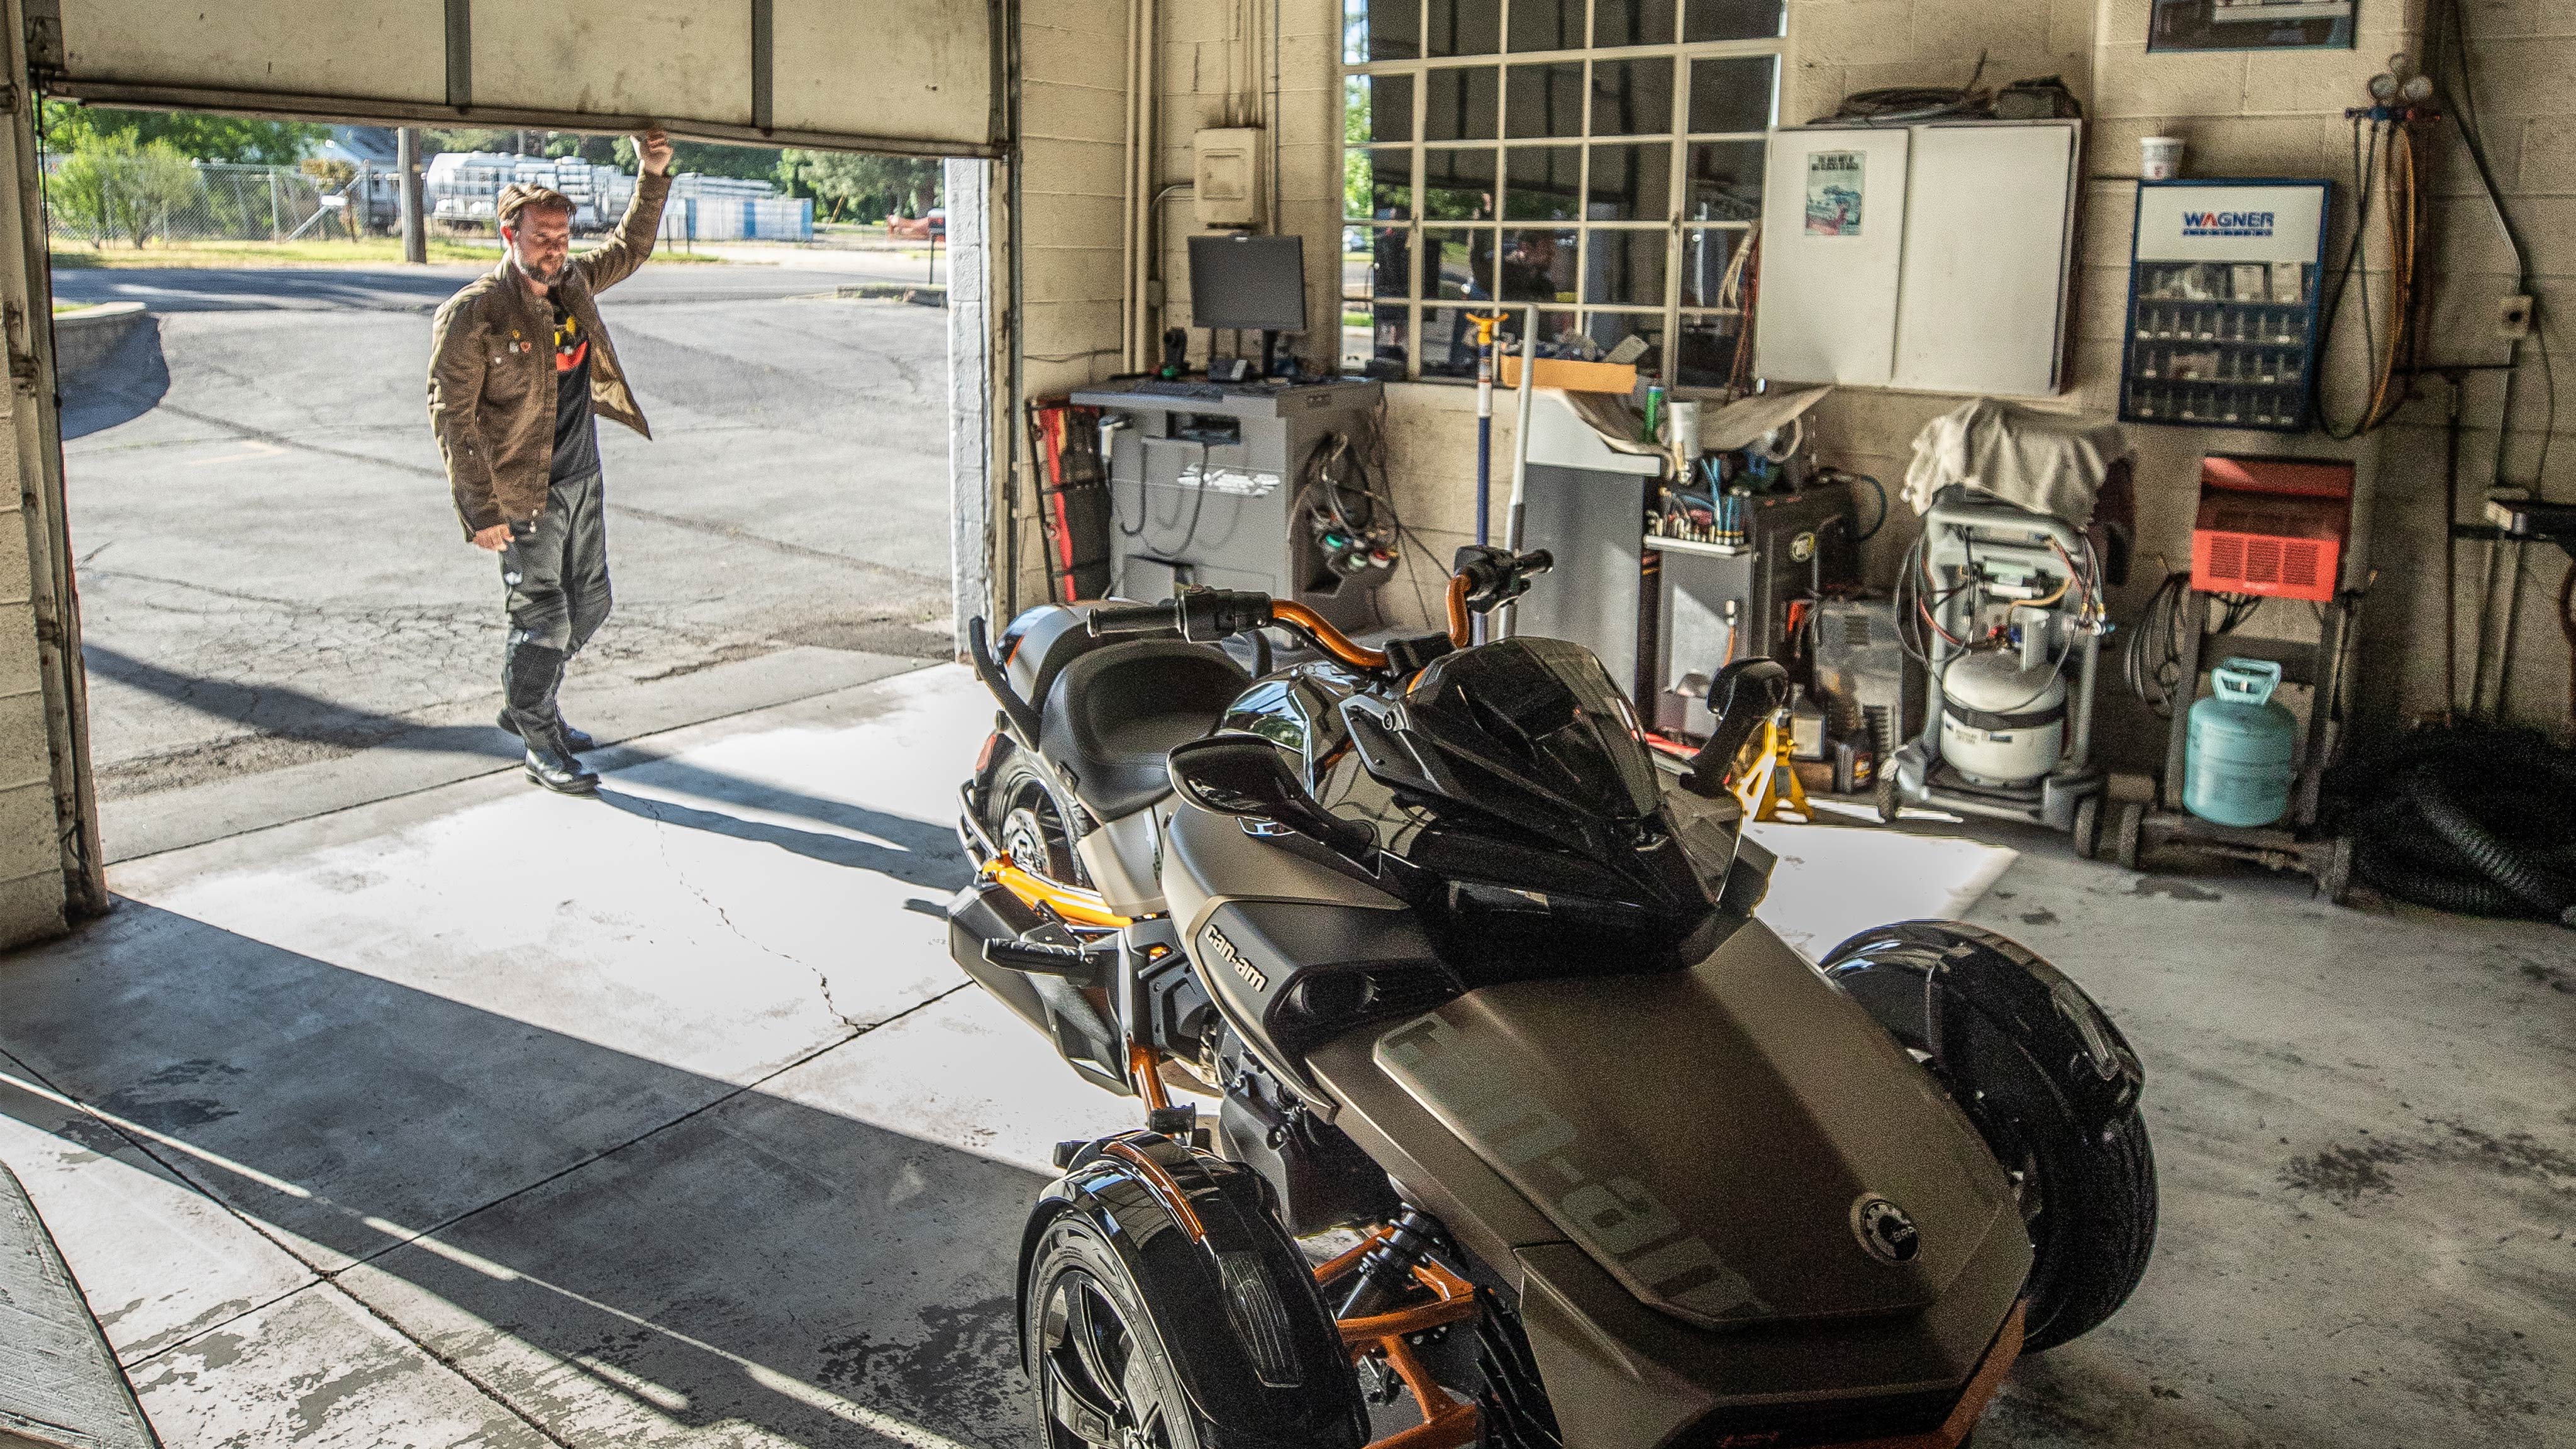 Can-Am Spyder F3が駐車されたガレージのドアを開ける男性